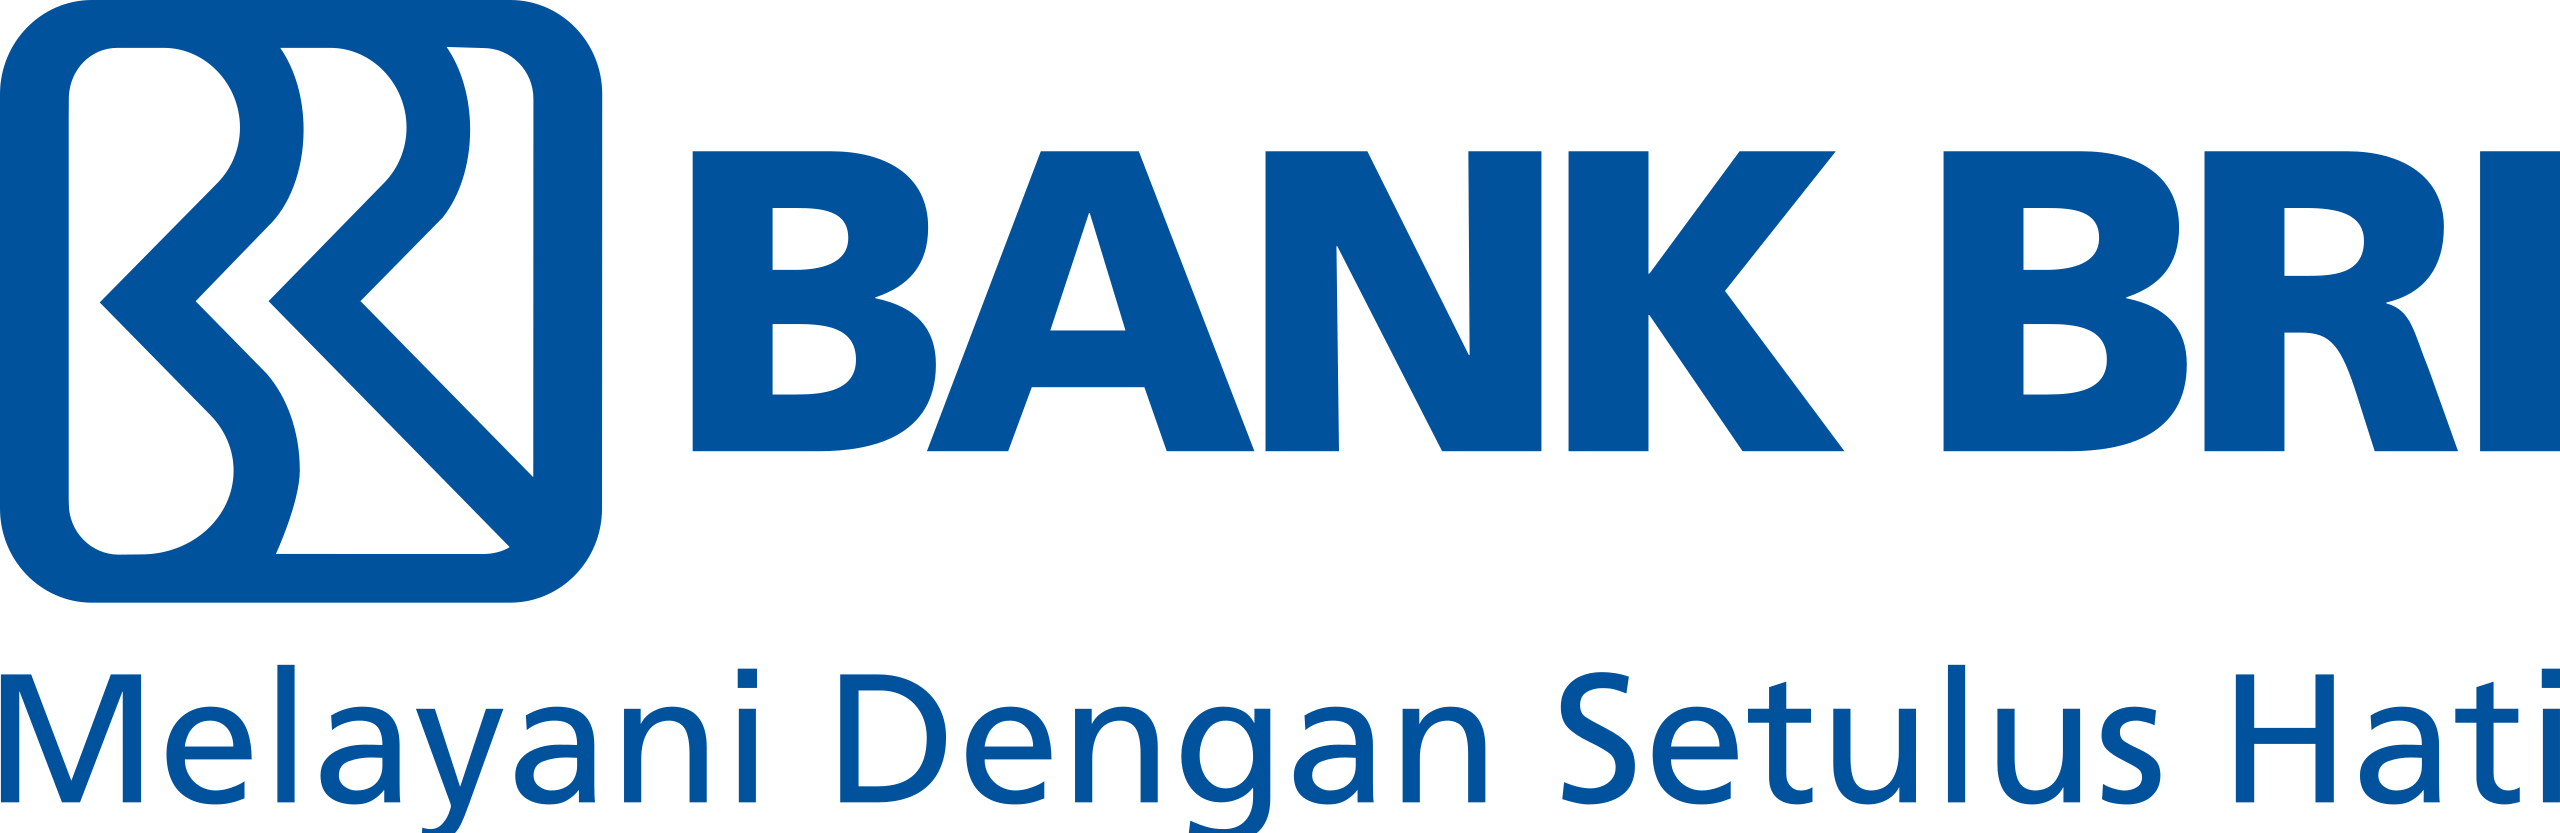 Bank Bri Logo - KibrisPDR